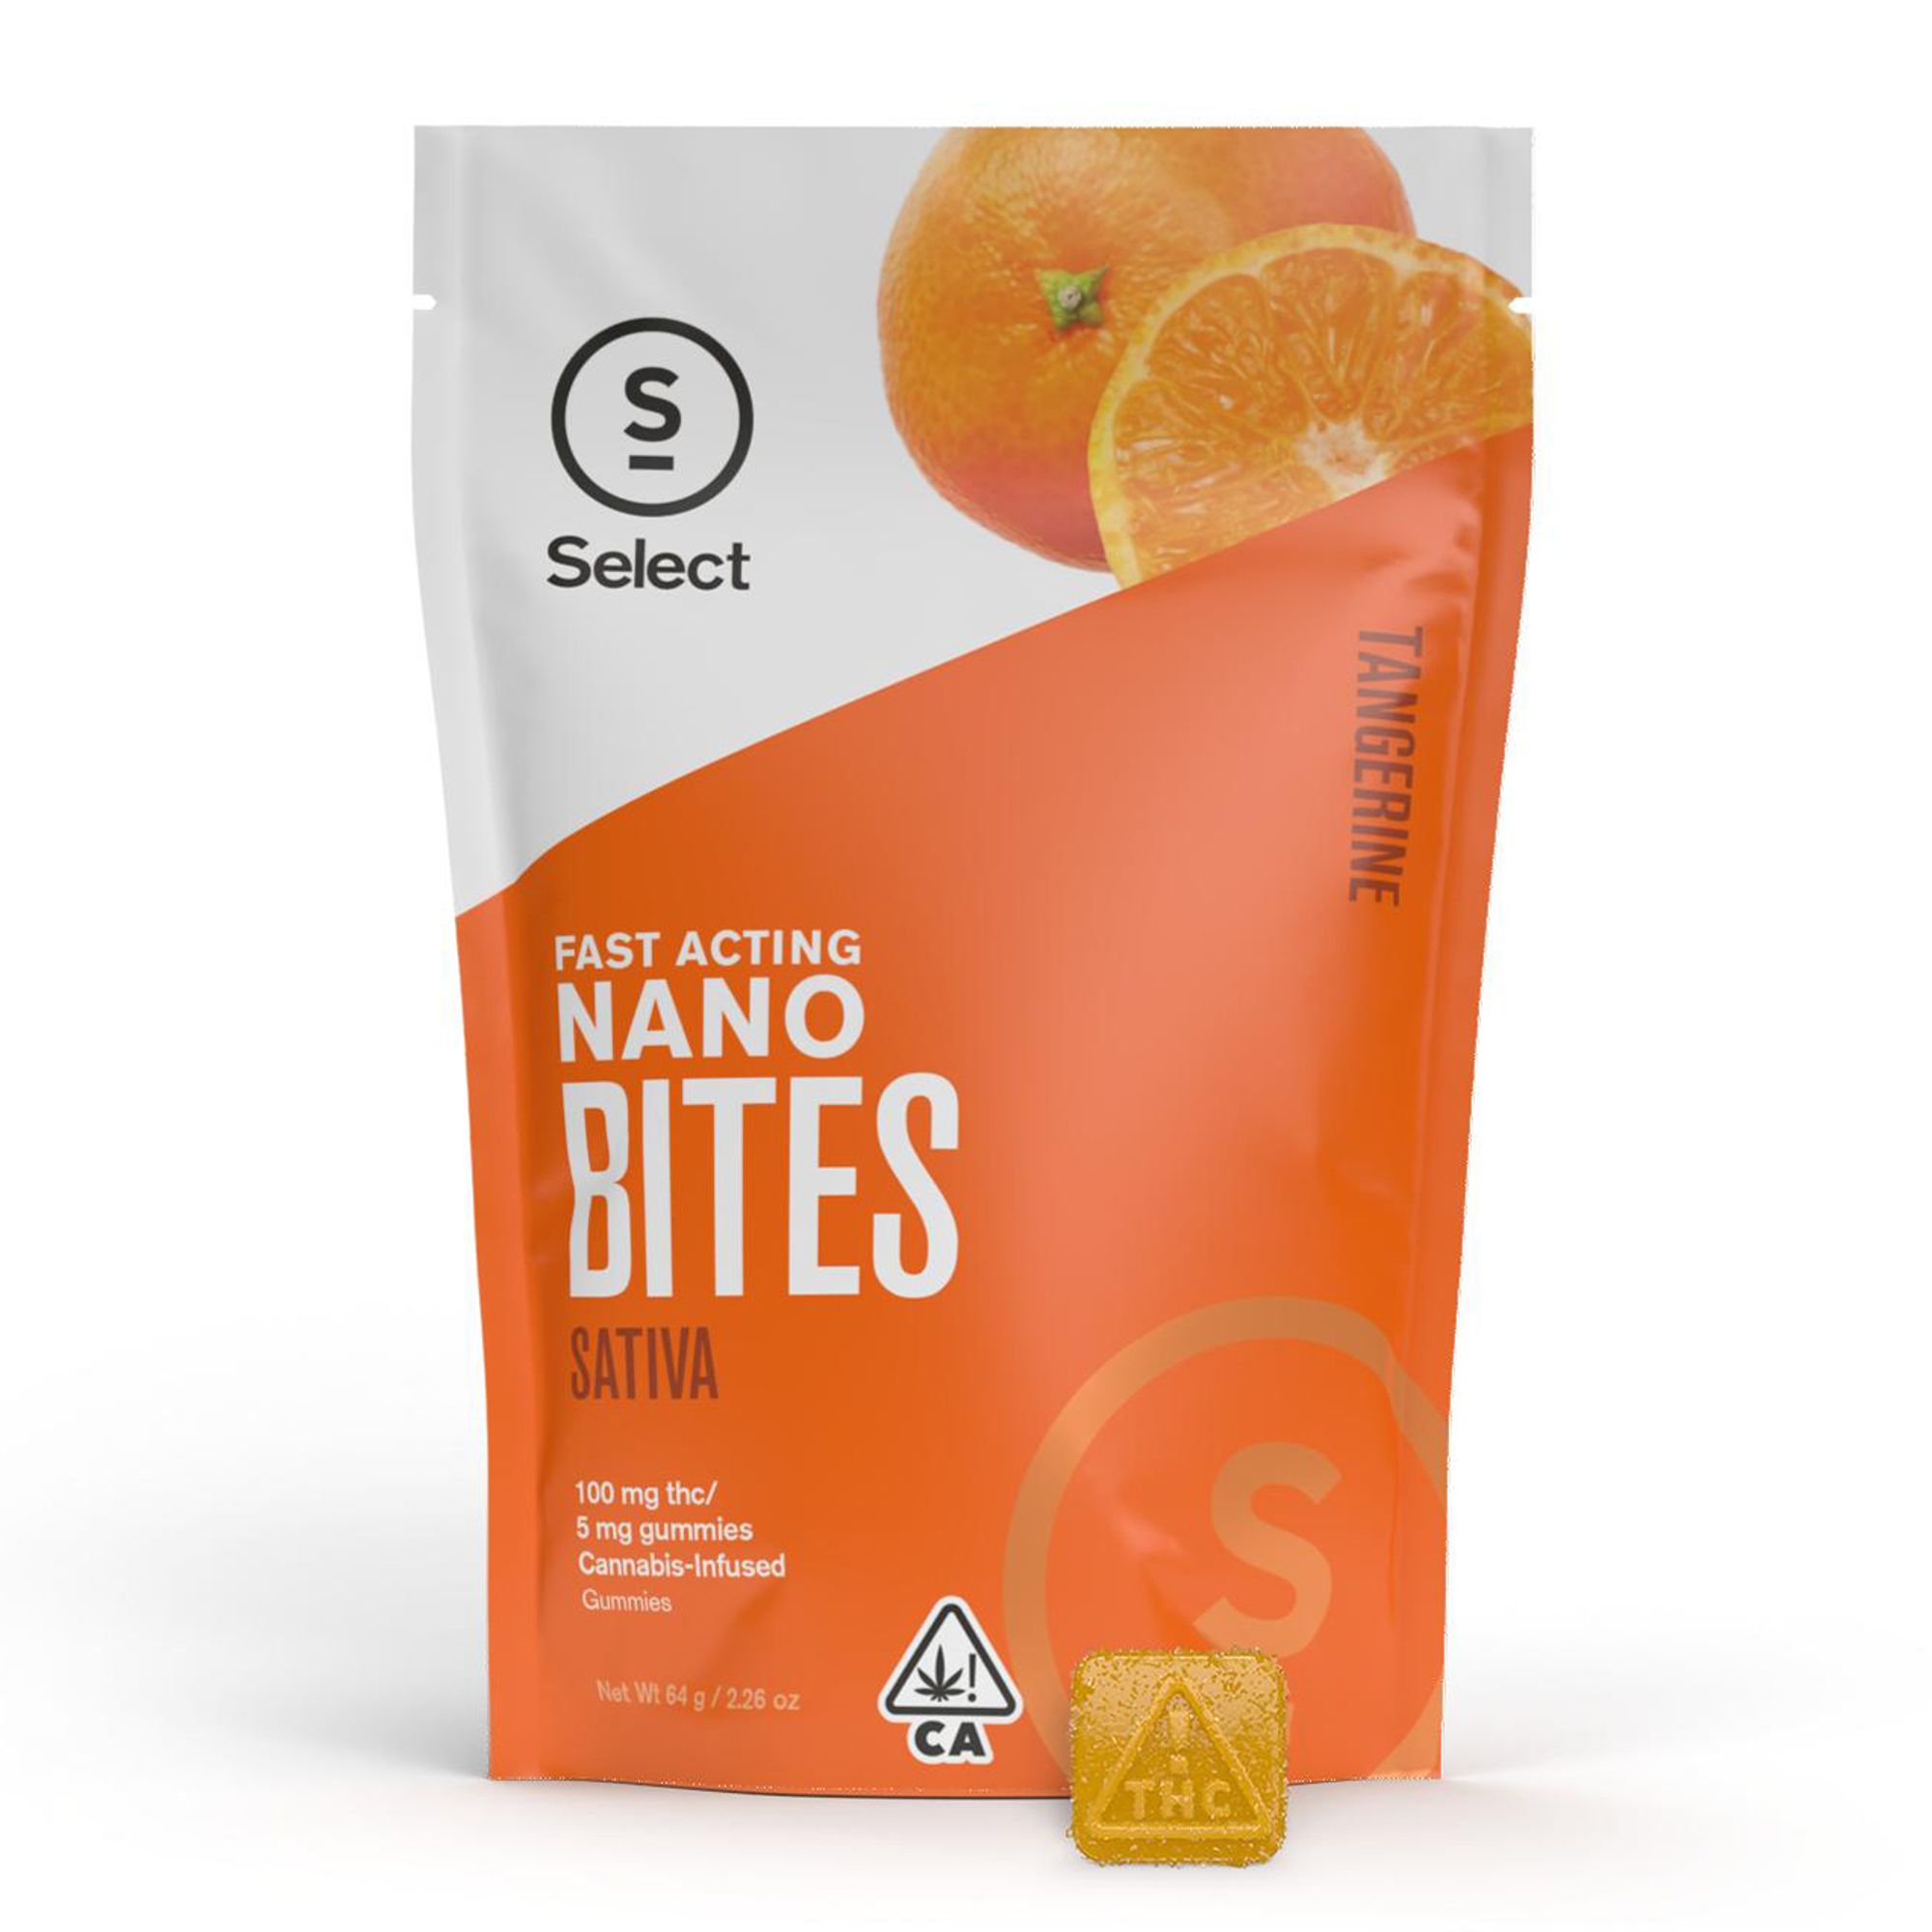 Tangerine Nano Bites